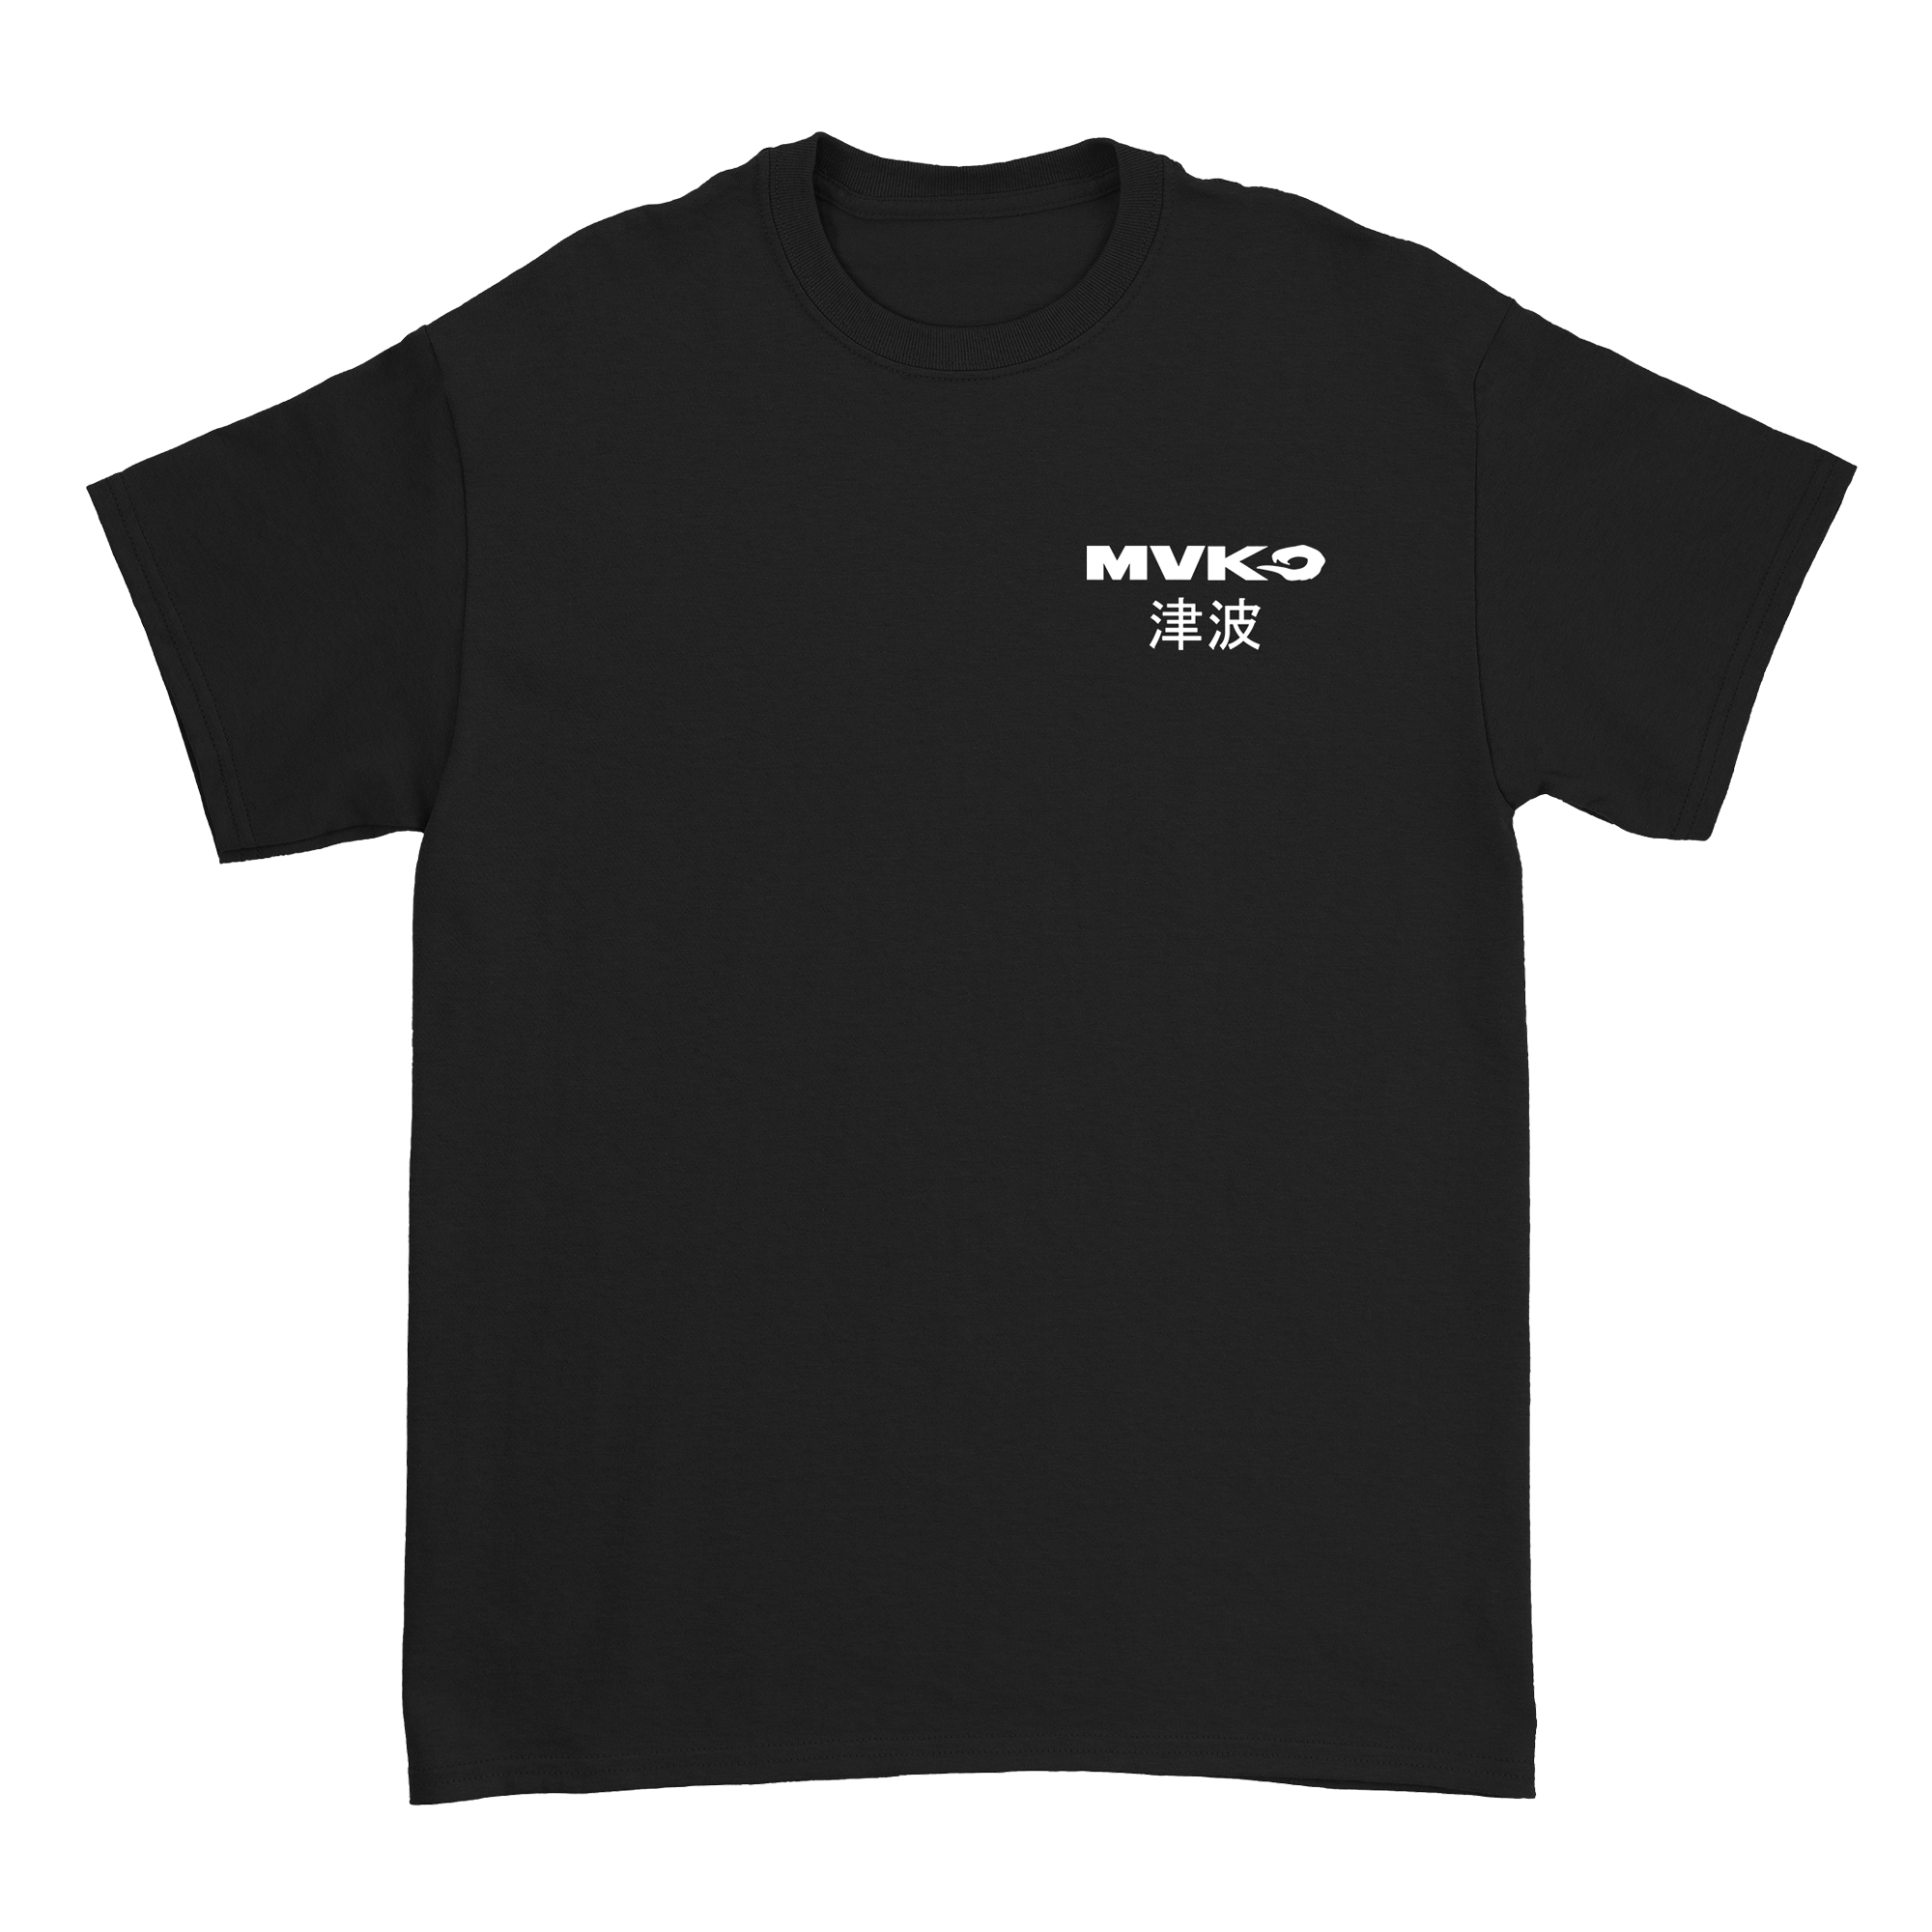 MVKO - MVKanji T-Shirt